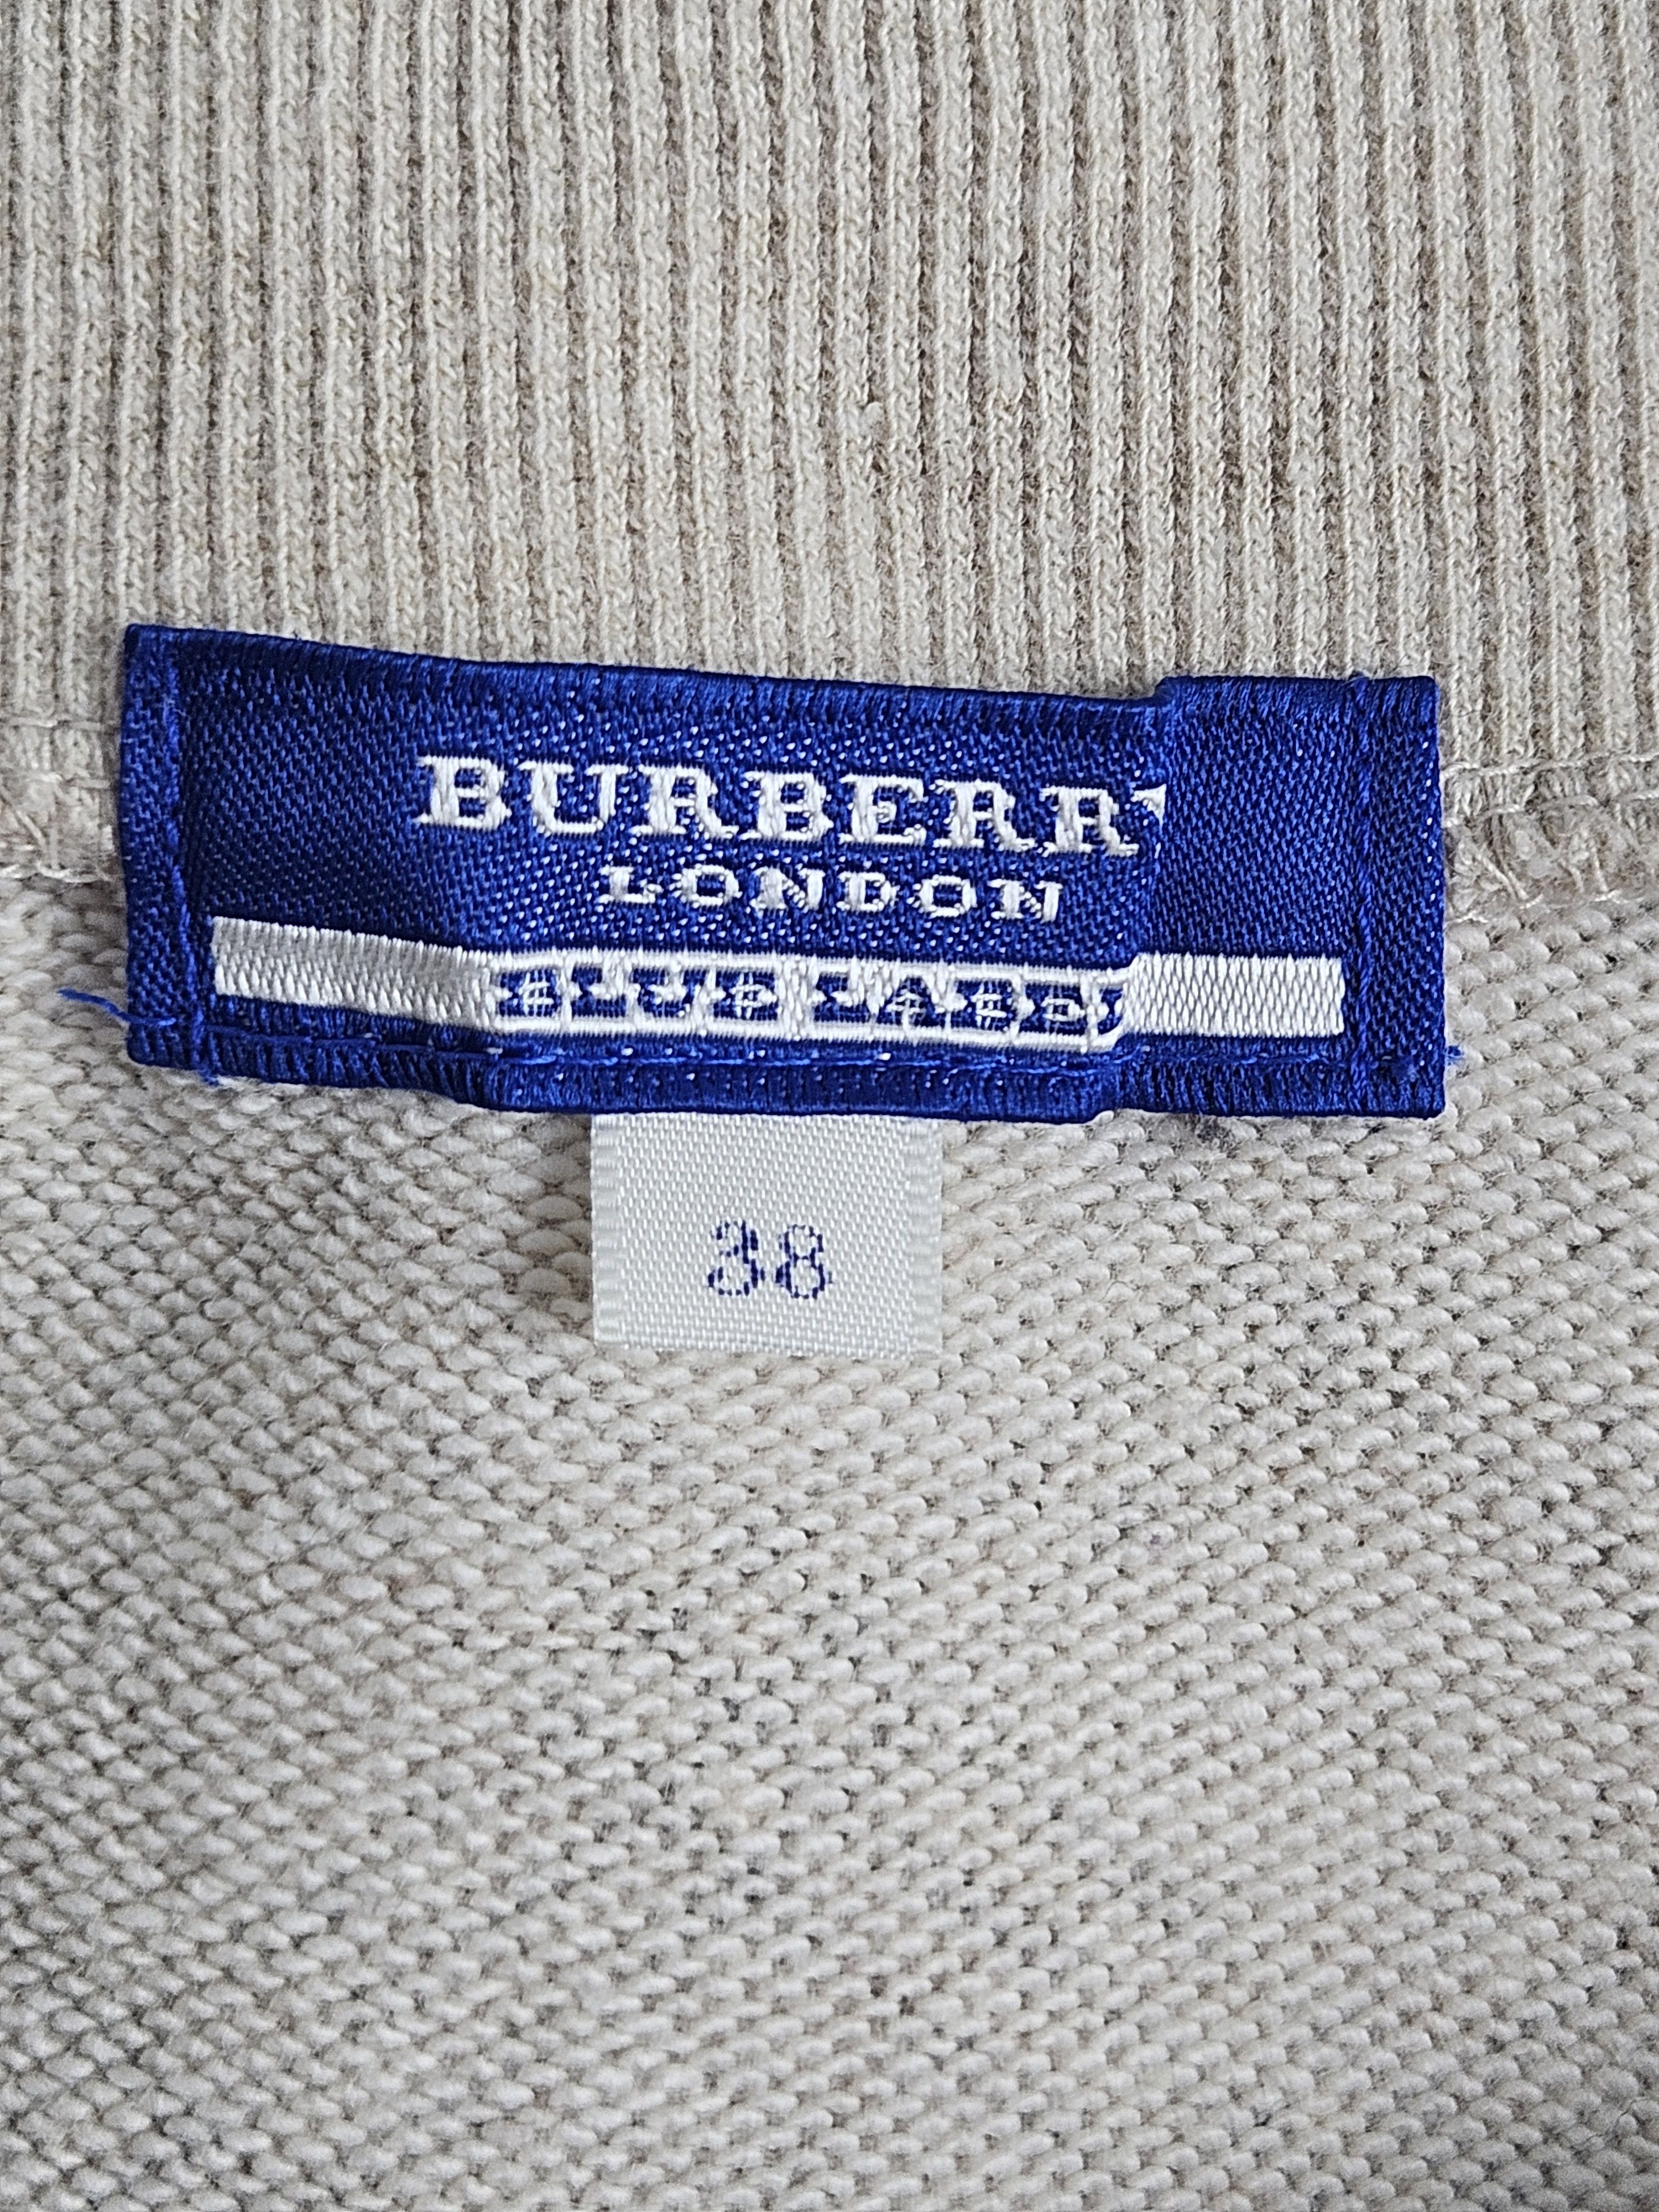 Burberry Blue Label Nova Check Shirt - 4